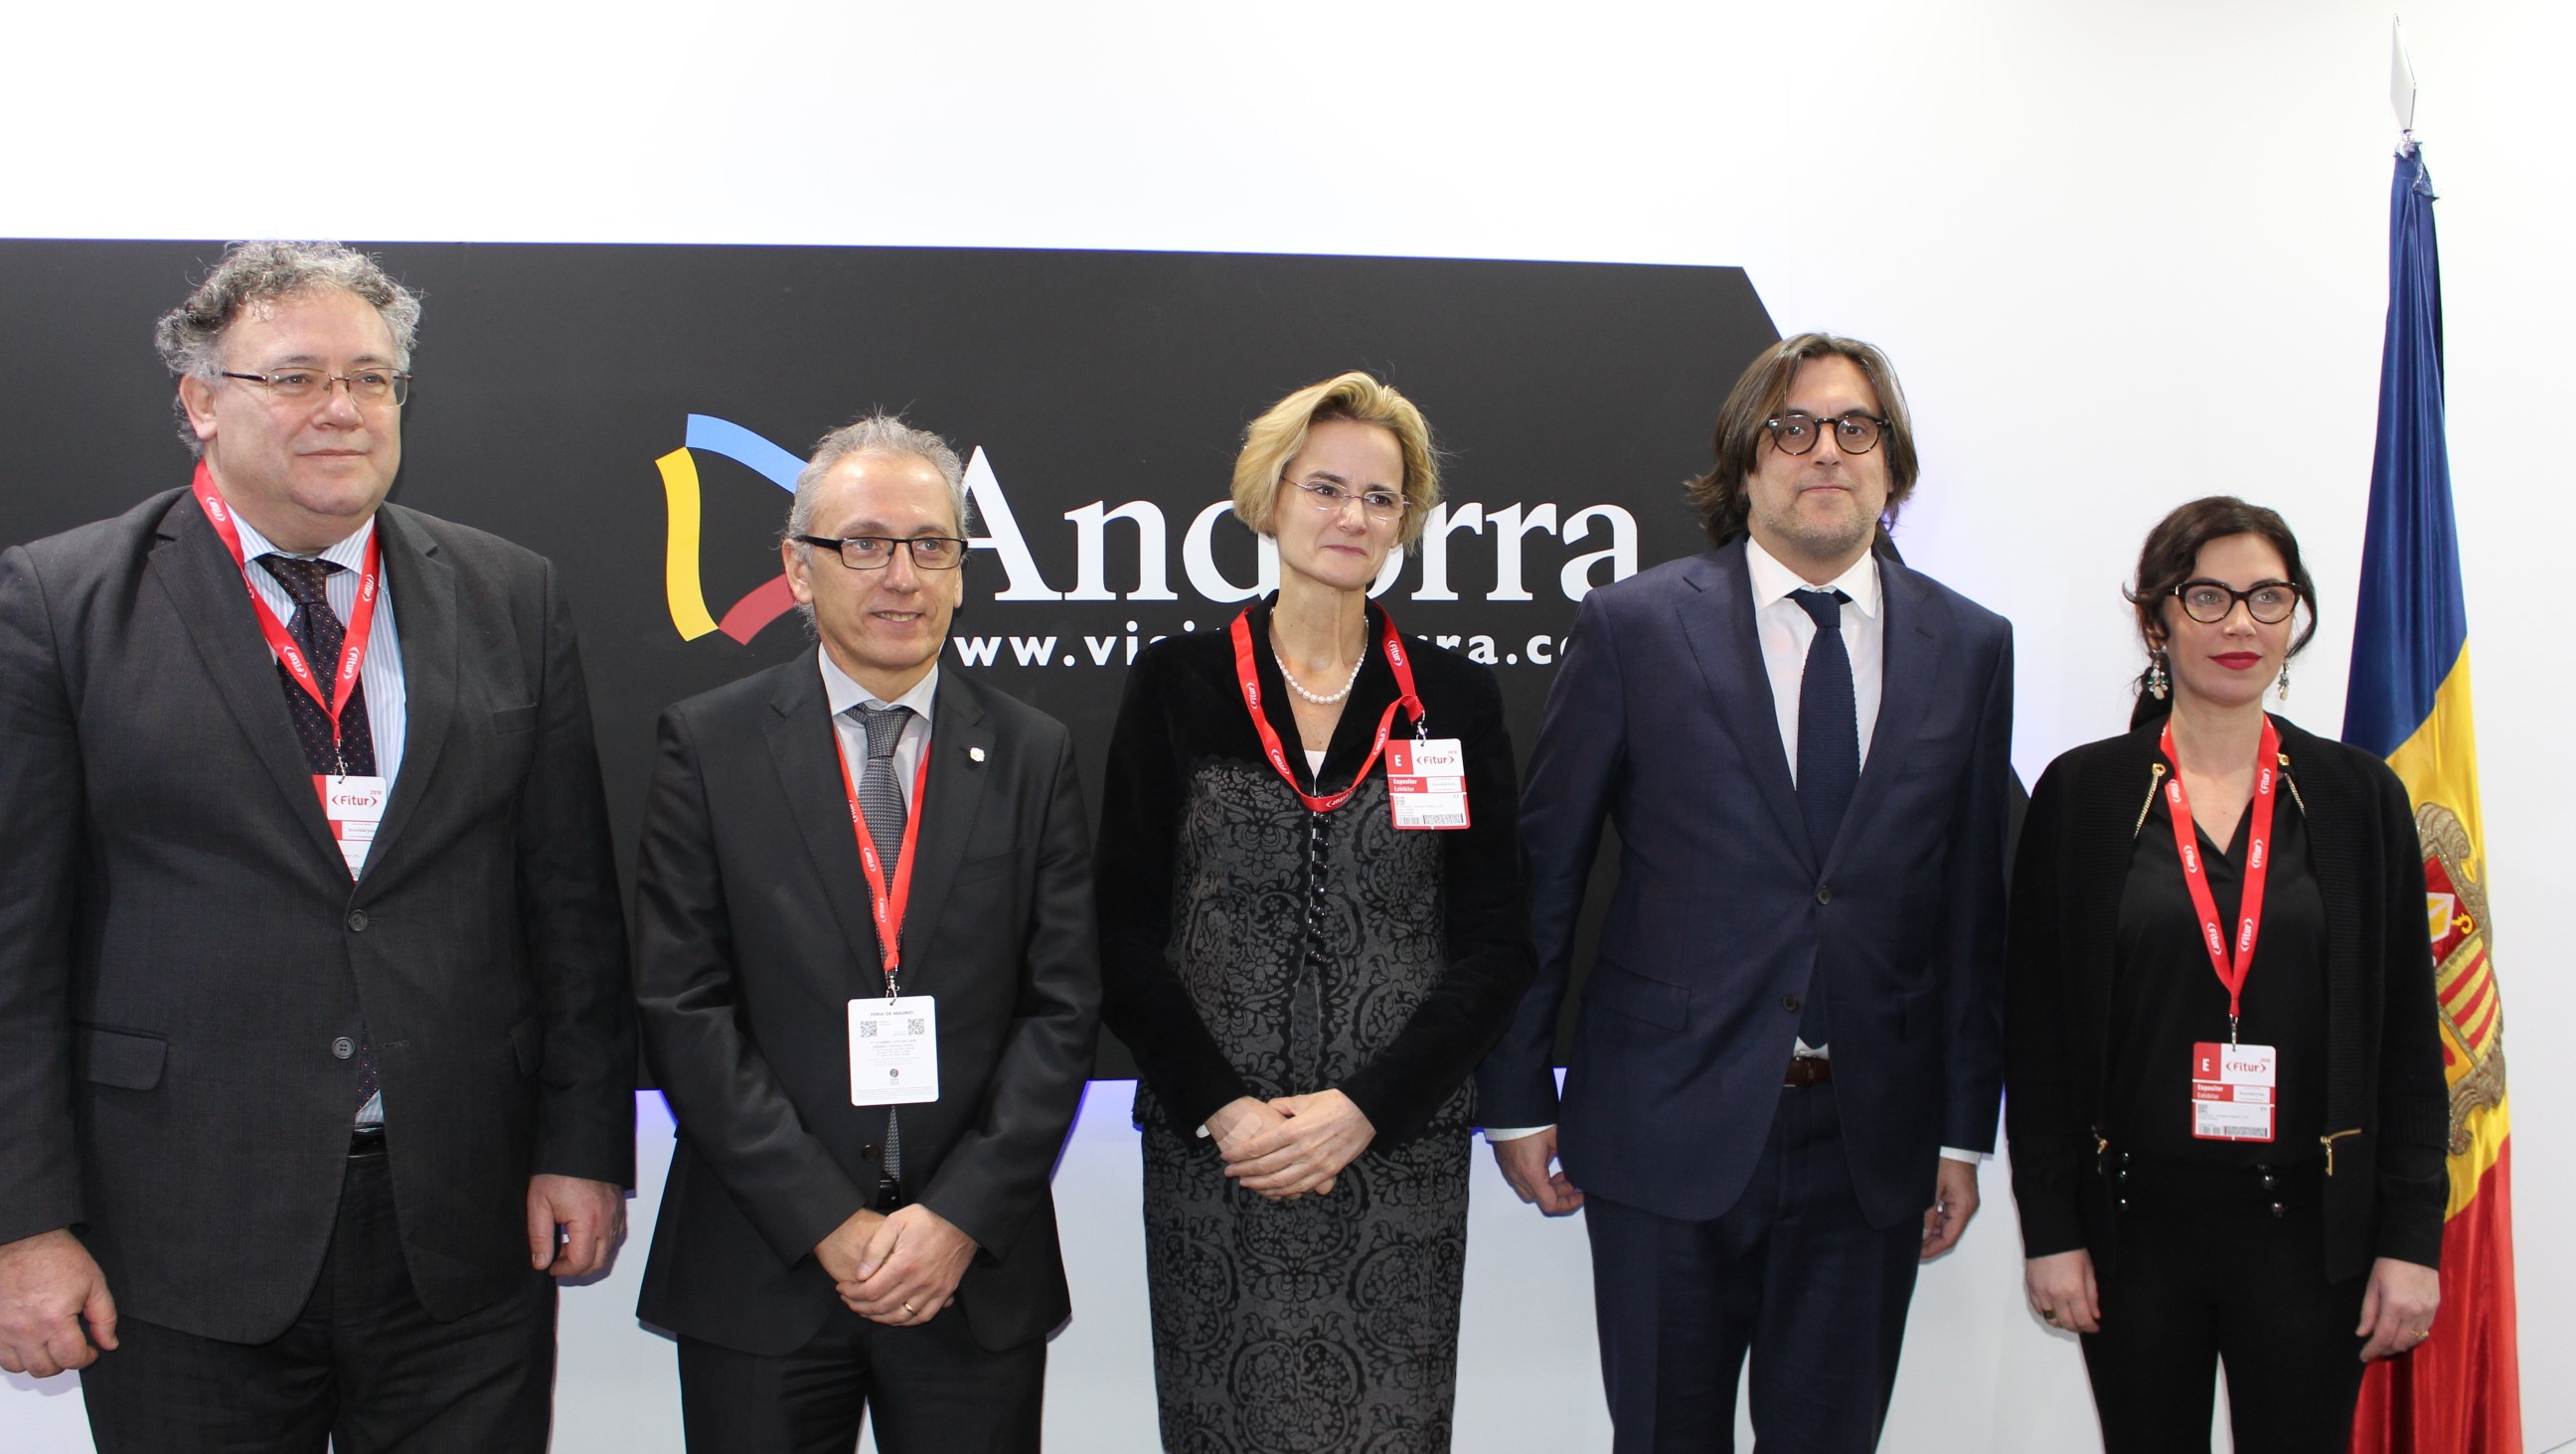 Aprofitant la presència d'Andorra a la Fira internacional de turi